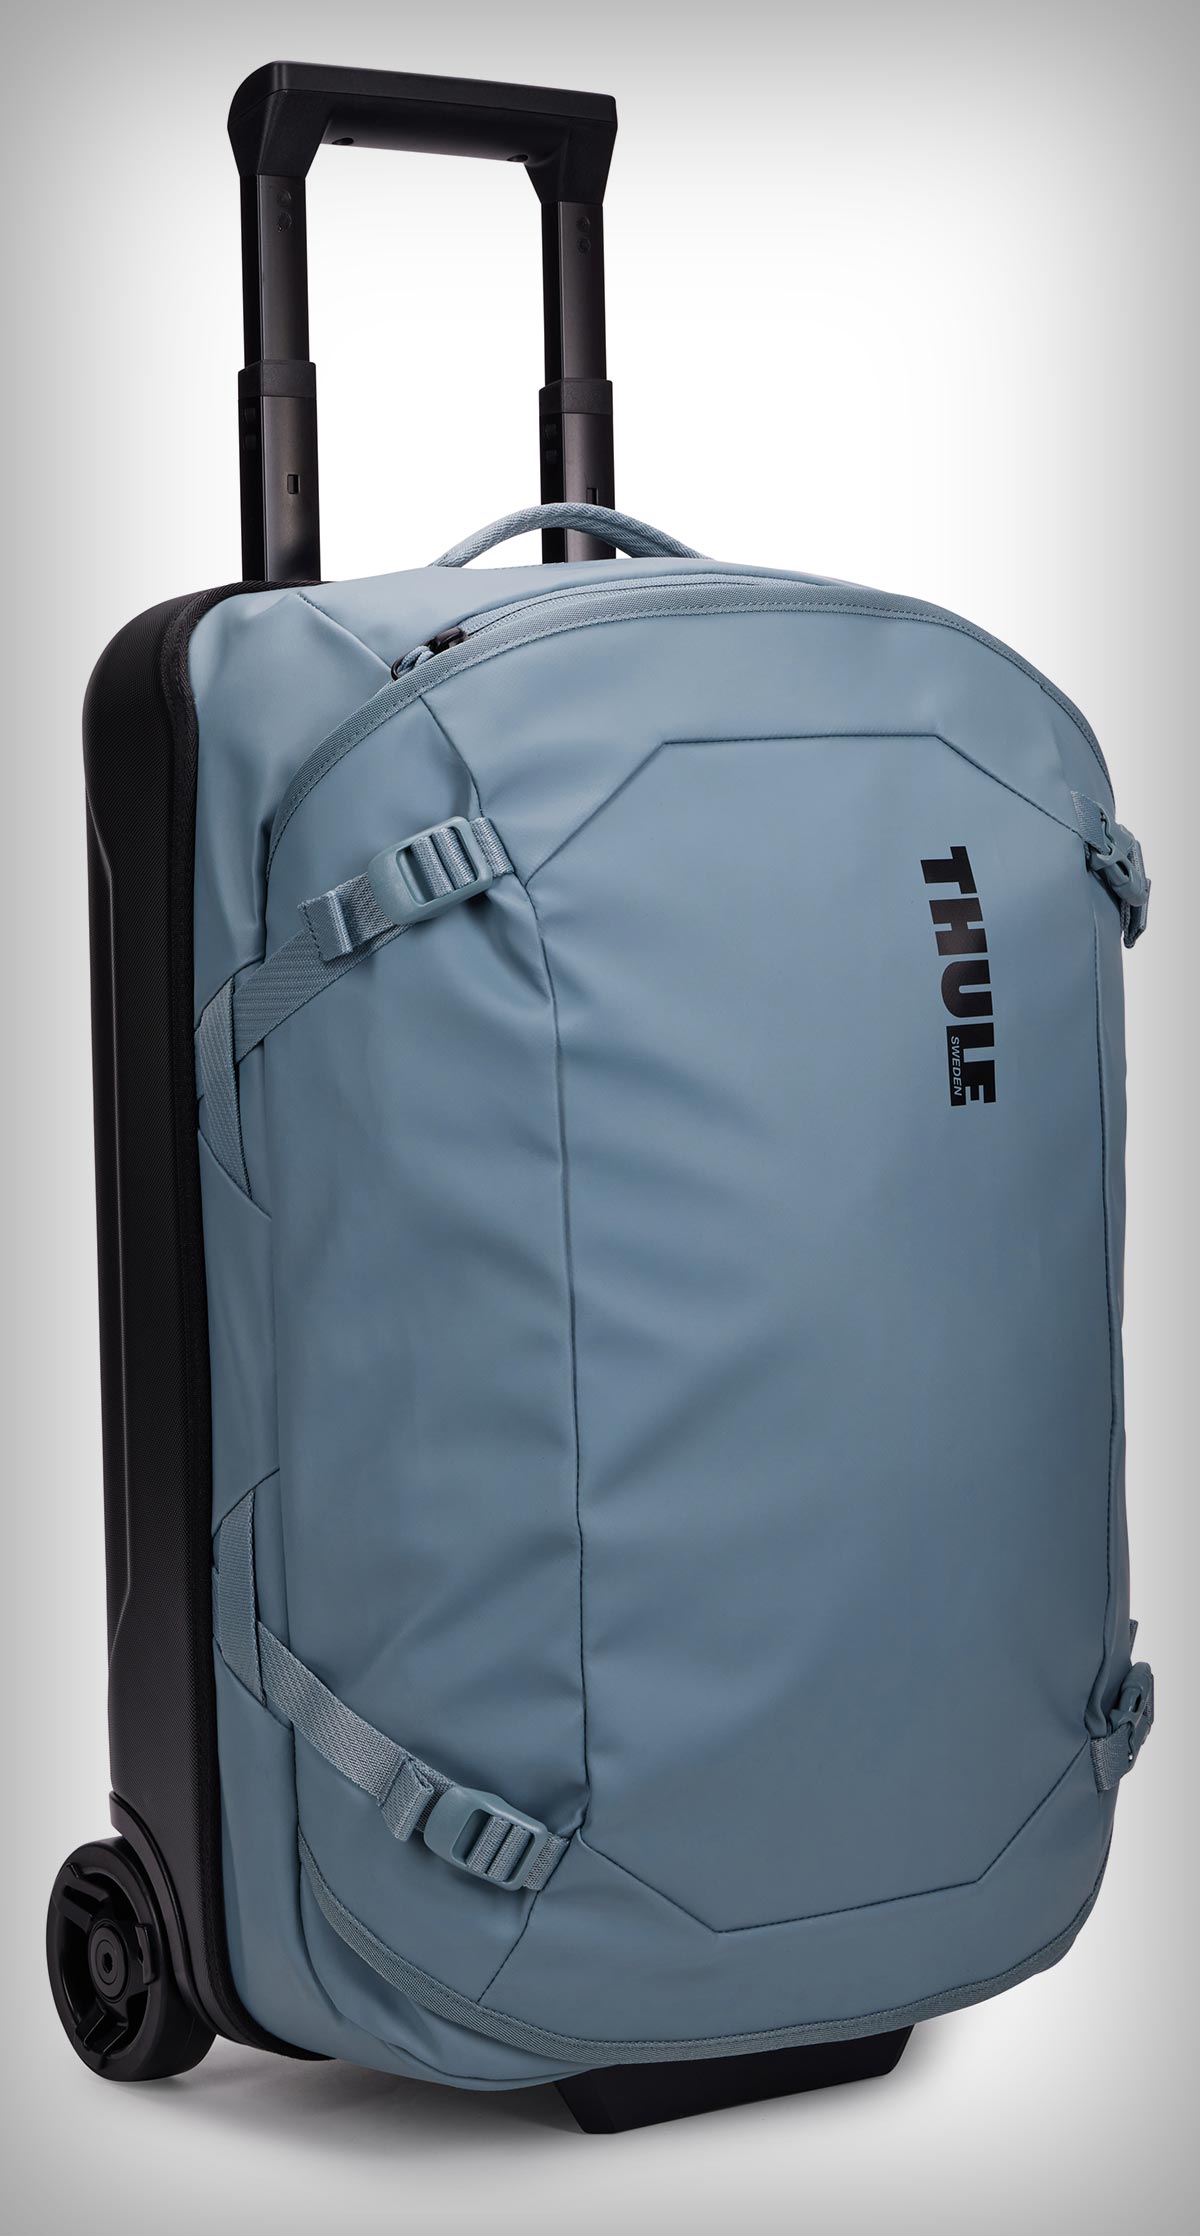 Las mochilas y bolsas Thule Chasm se renuevan con nuevos colores y tejidos 100% reciclados